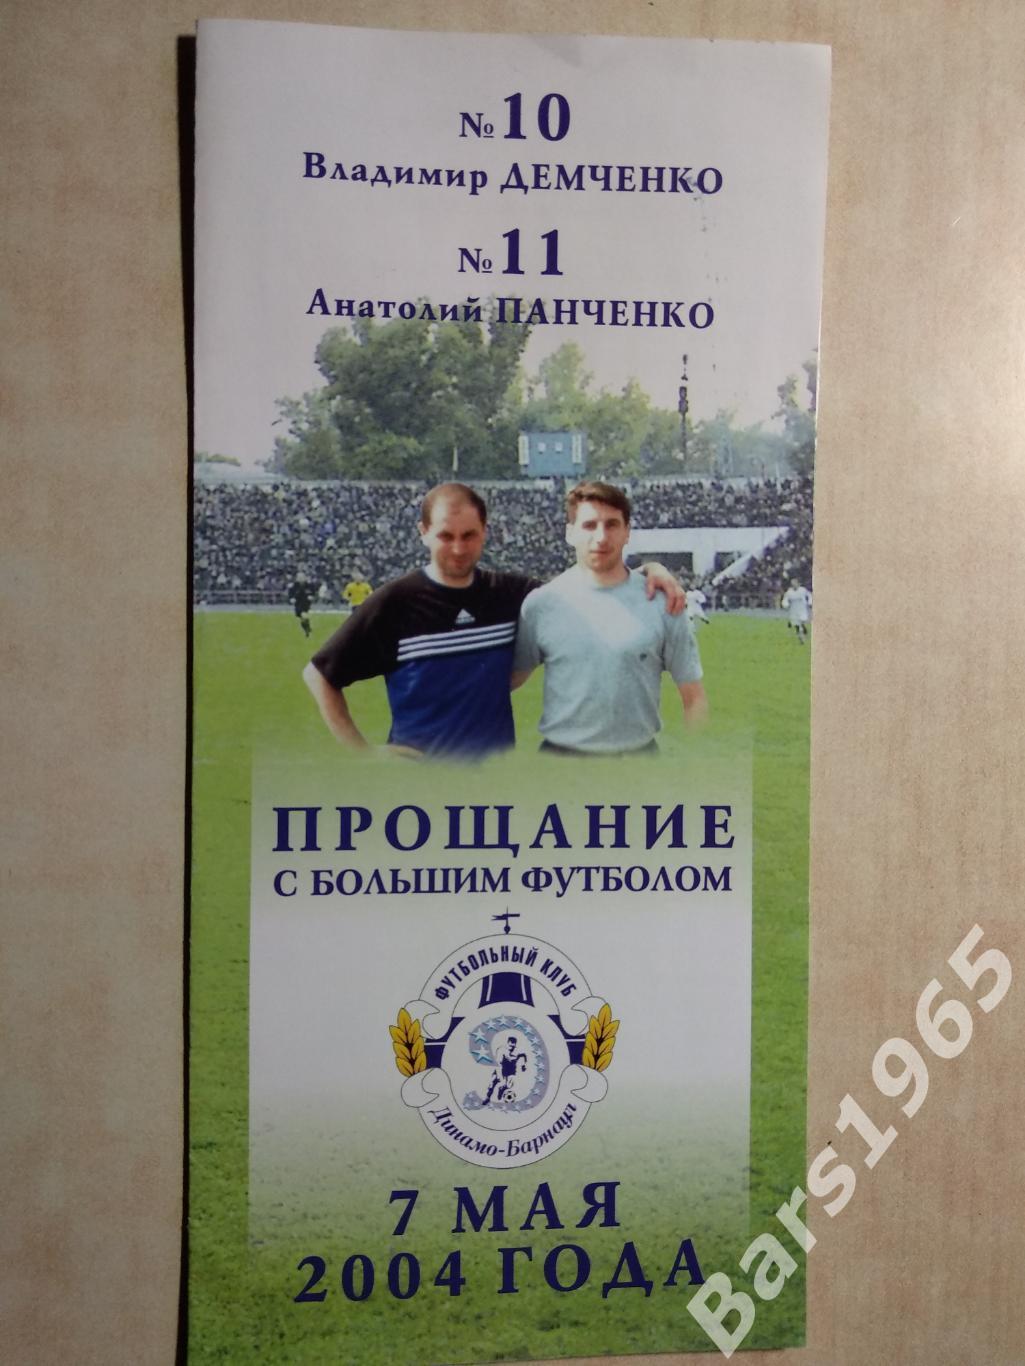 Барнаул 2004 Прощание с большим футболом